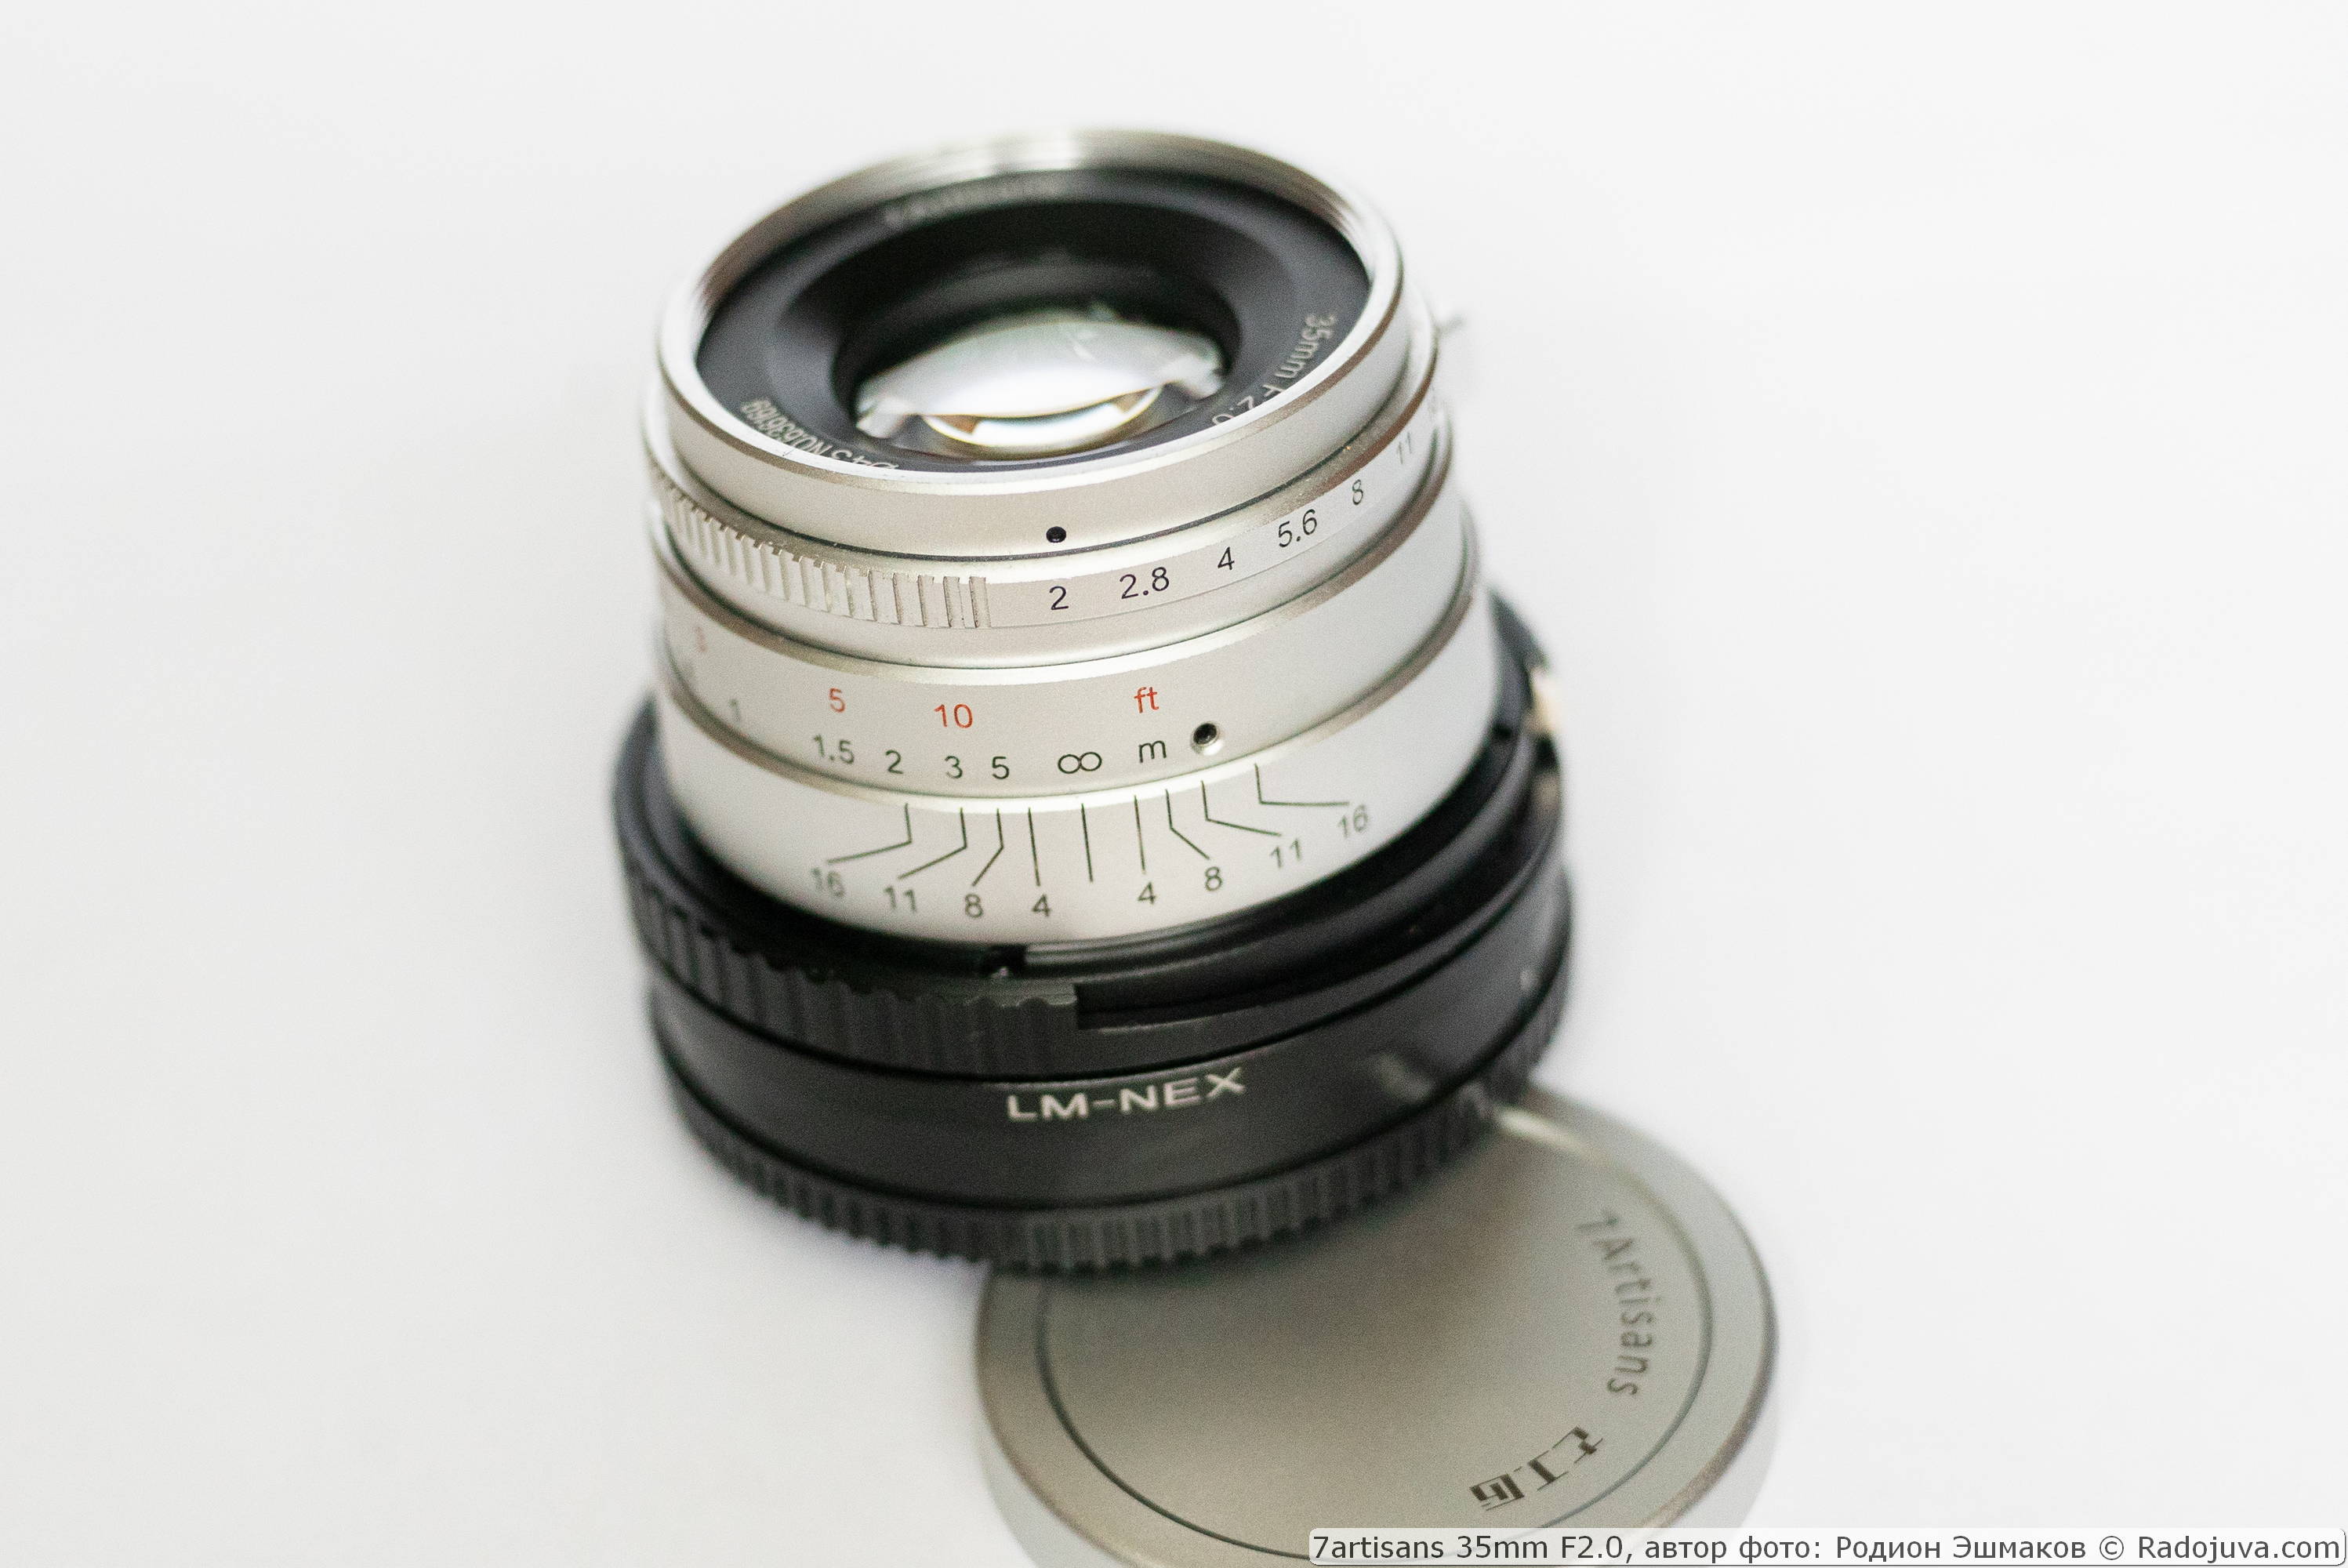 7artisans 35/2 lens met Leica M-NEX helicoid-adapter bij scherpstelling op oneindig.